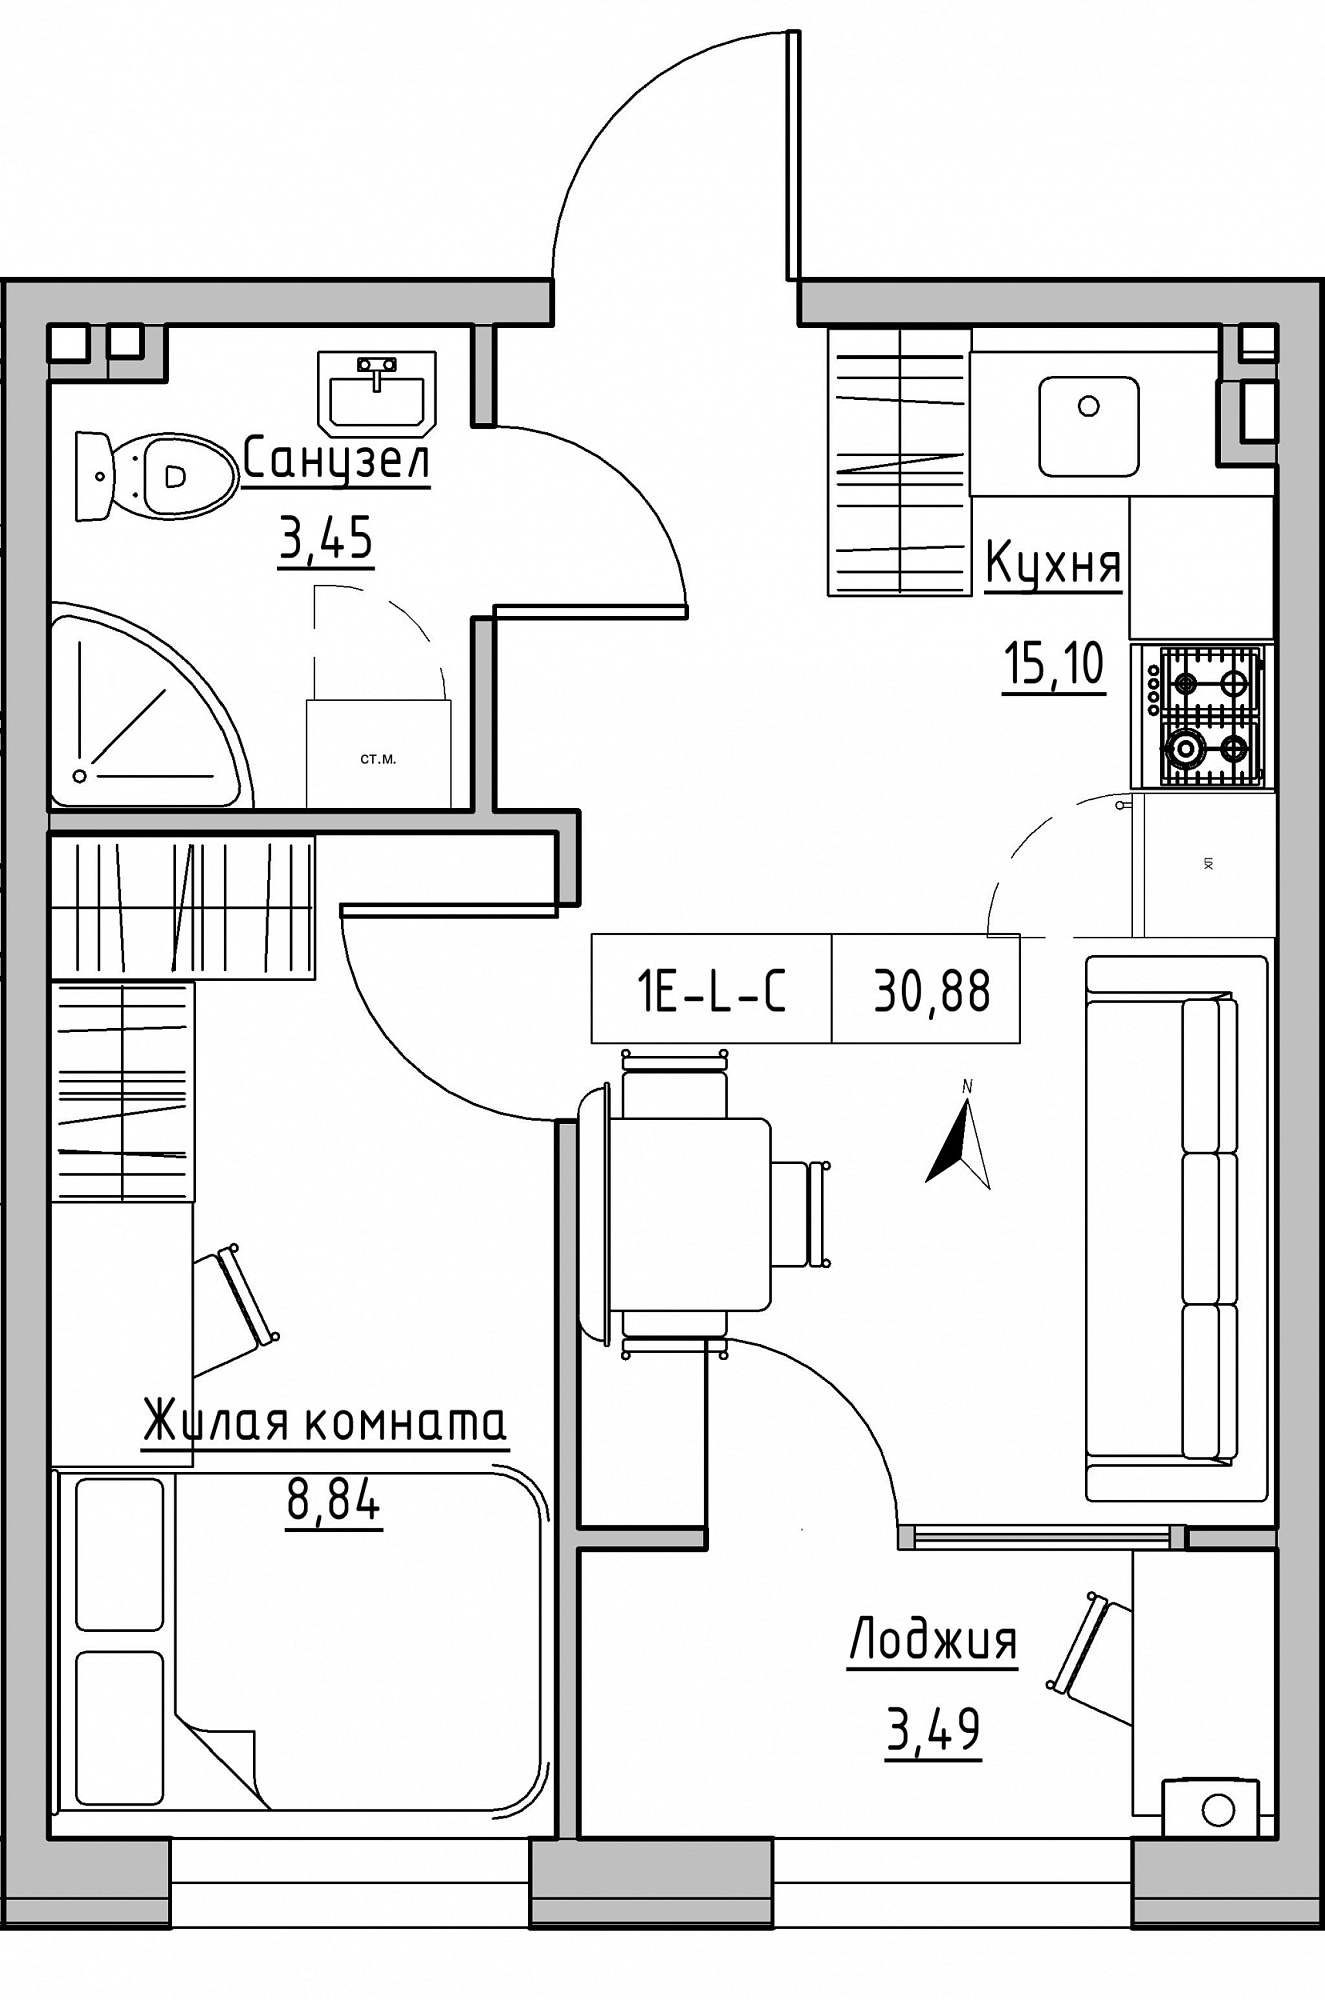 Планування 1-к квартира площею 30.88м2, KS-024-02/0007.